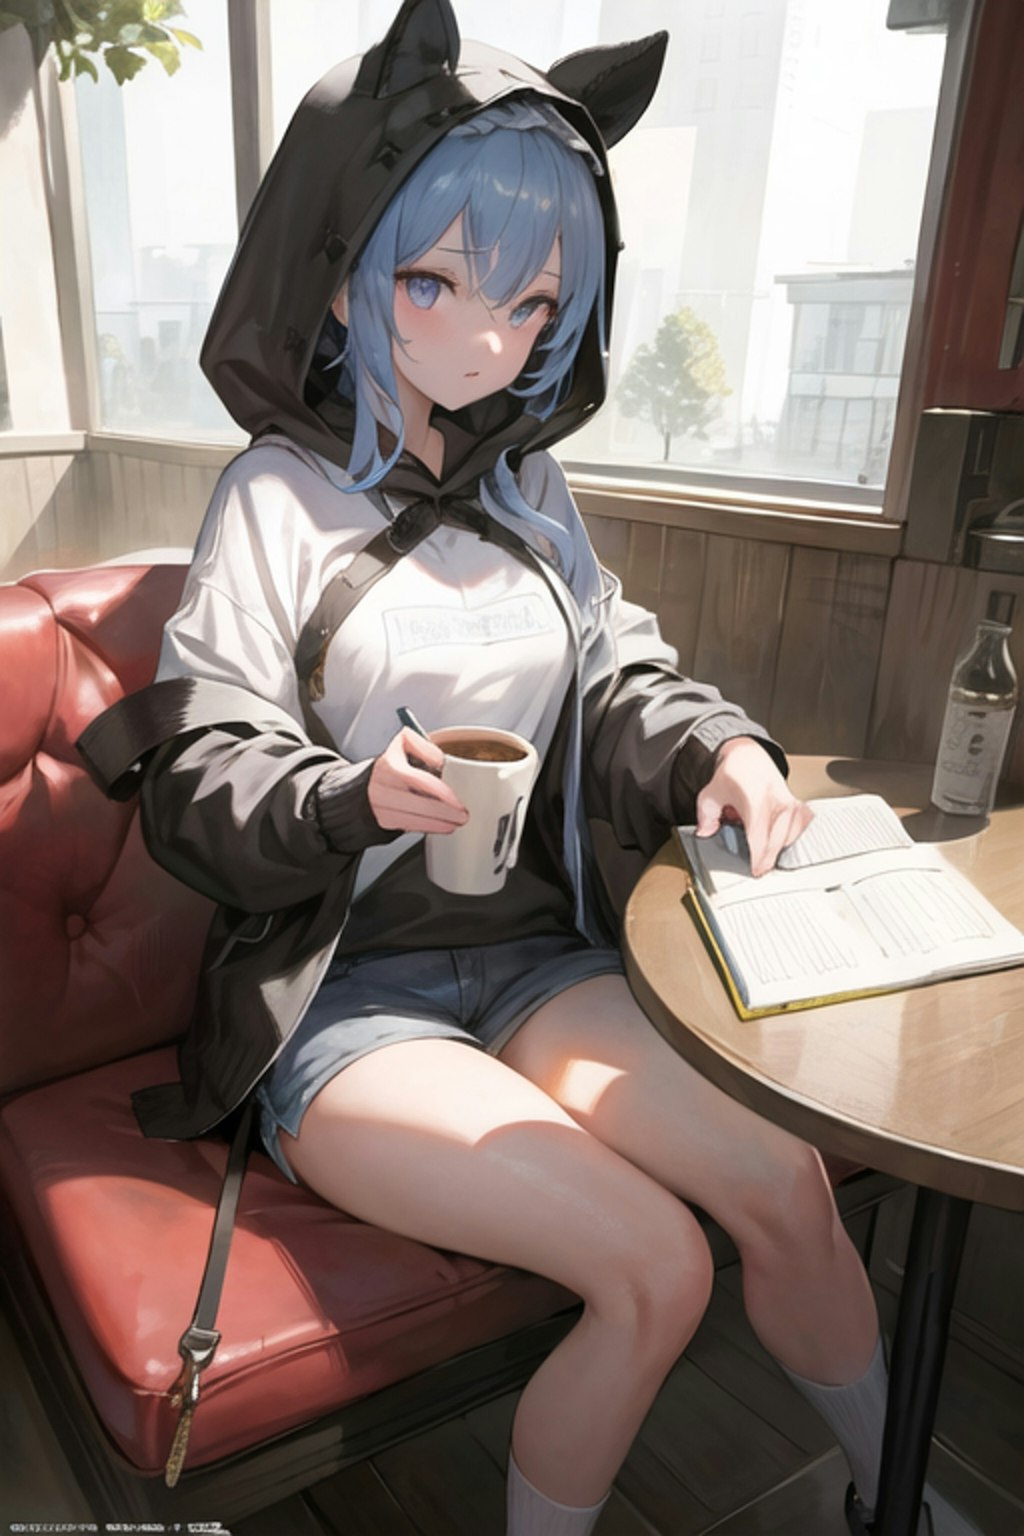 カフェでお勉強中